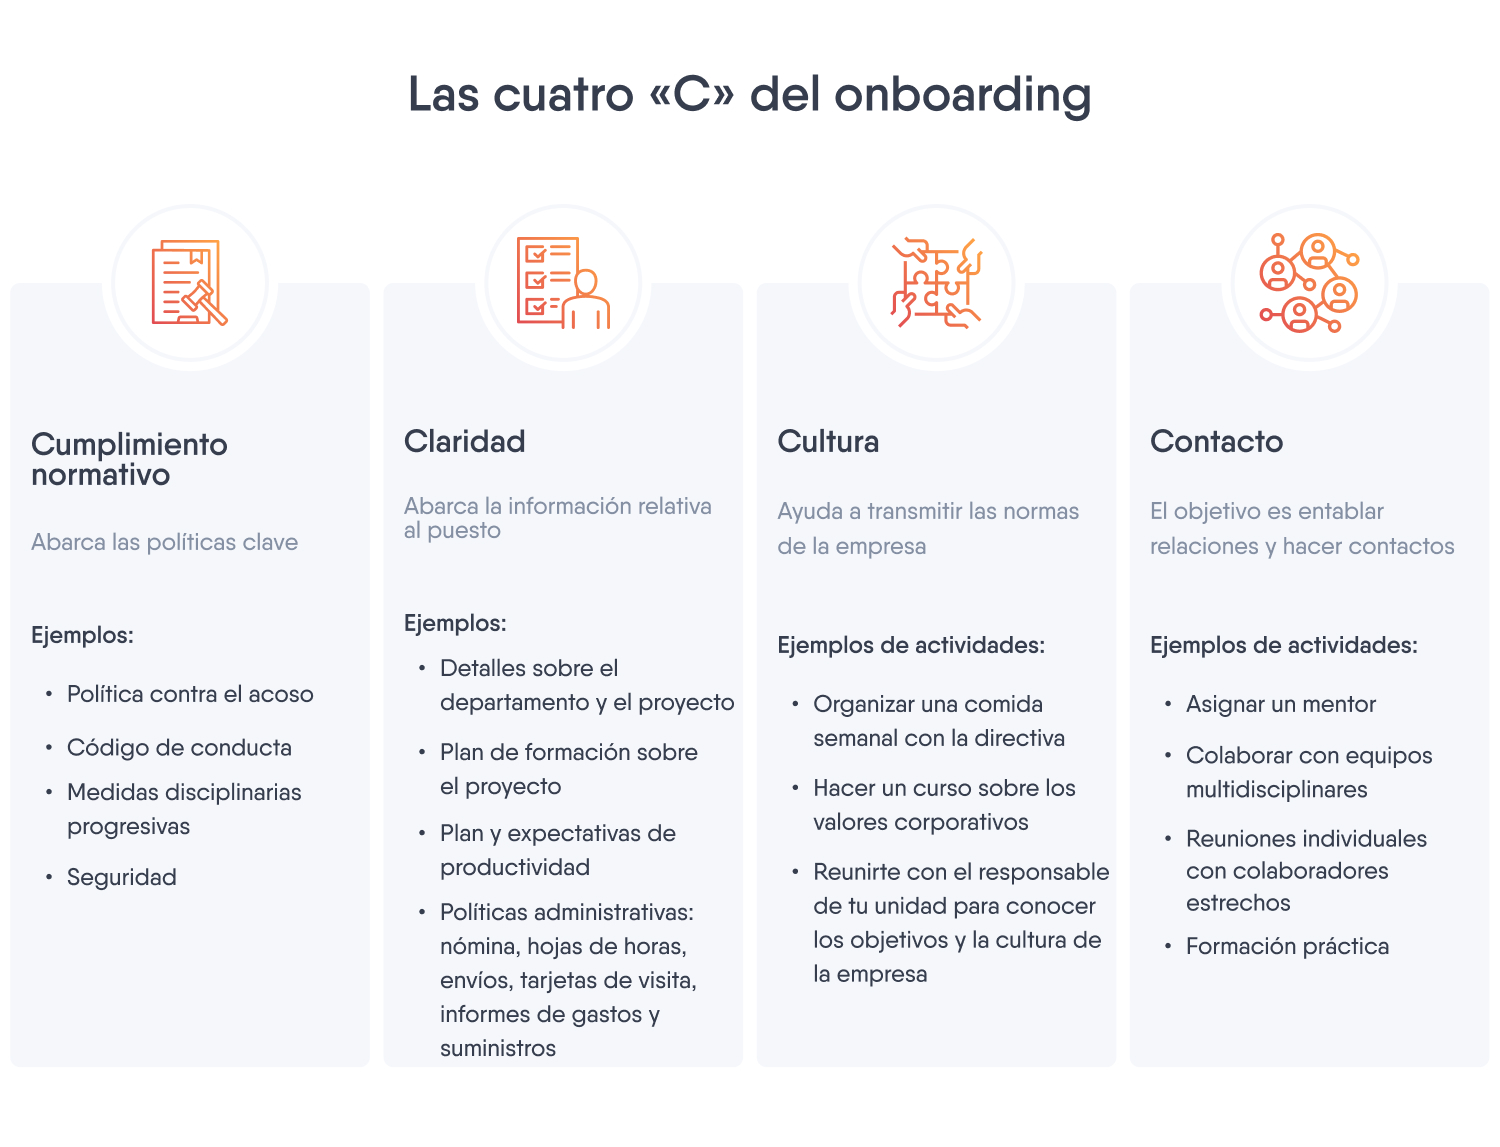 Diagrama que describe las cuatro "C" de un programa de onboarding: cumplimiento normativo, claridad, cultura y contacto.